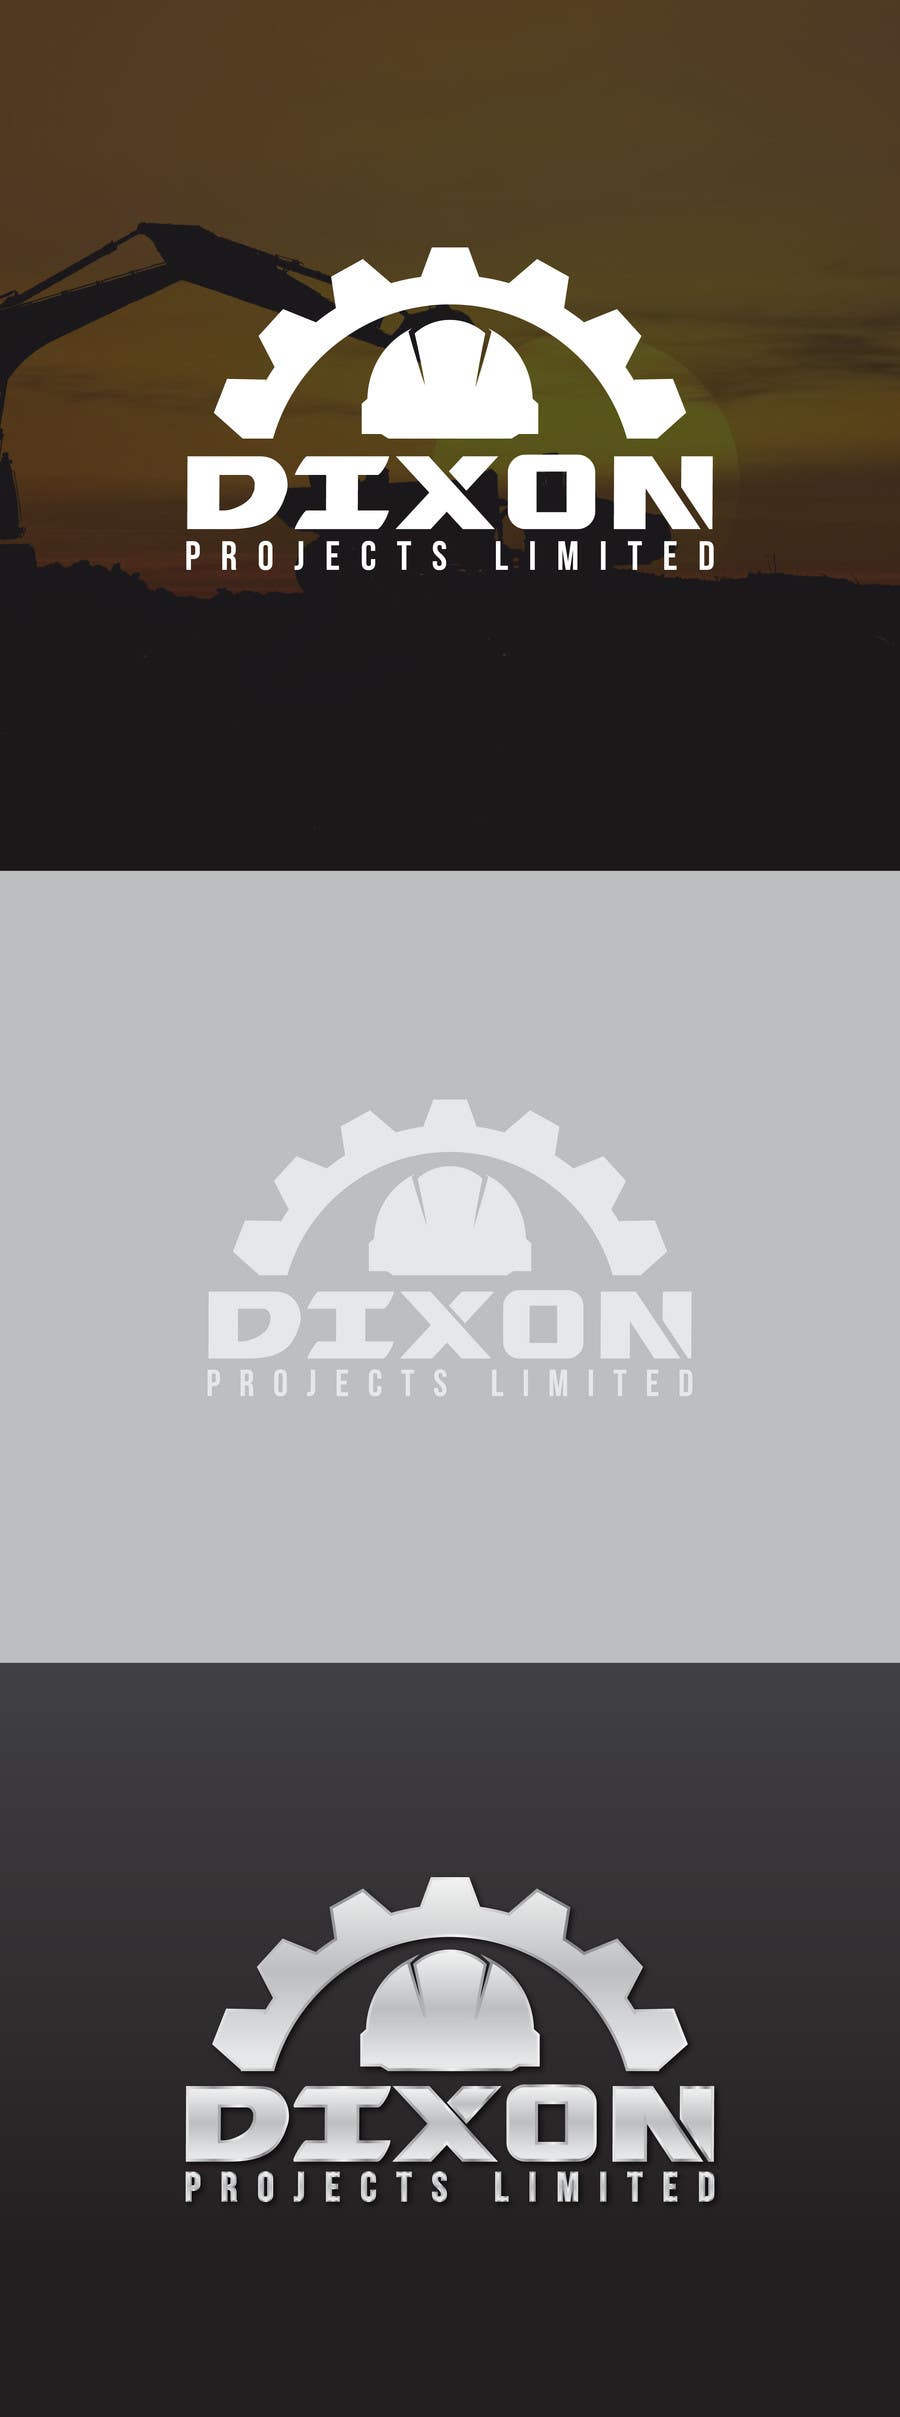 Kilpailutyö #23 kilpailussa                                                 Design a Logo for Dixon Projects Limited.
                                            